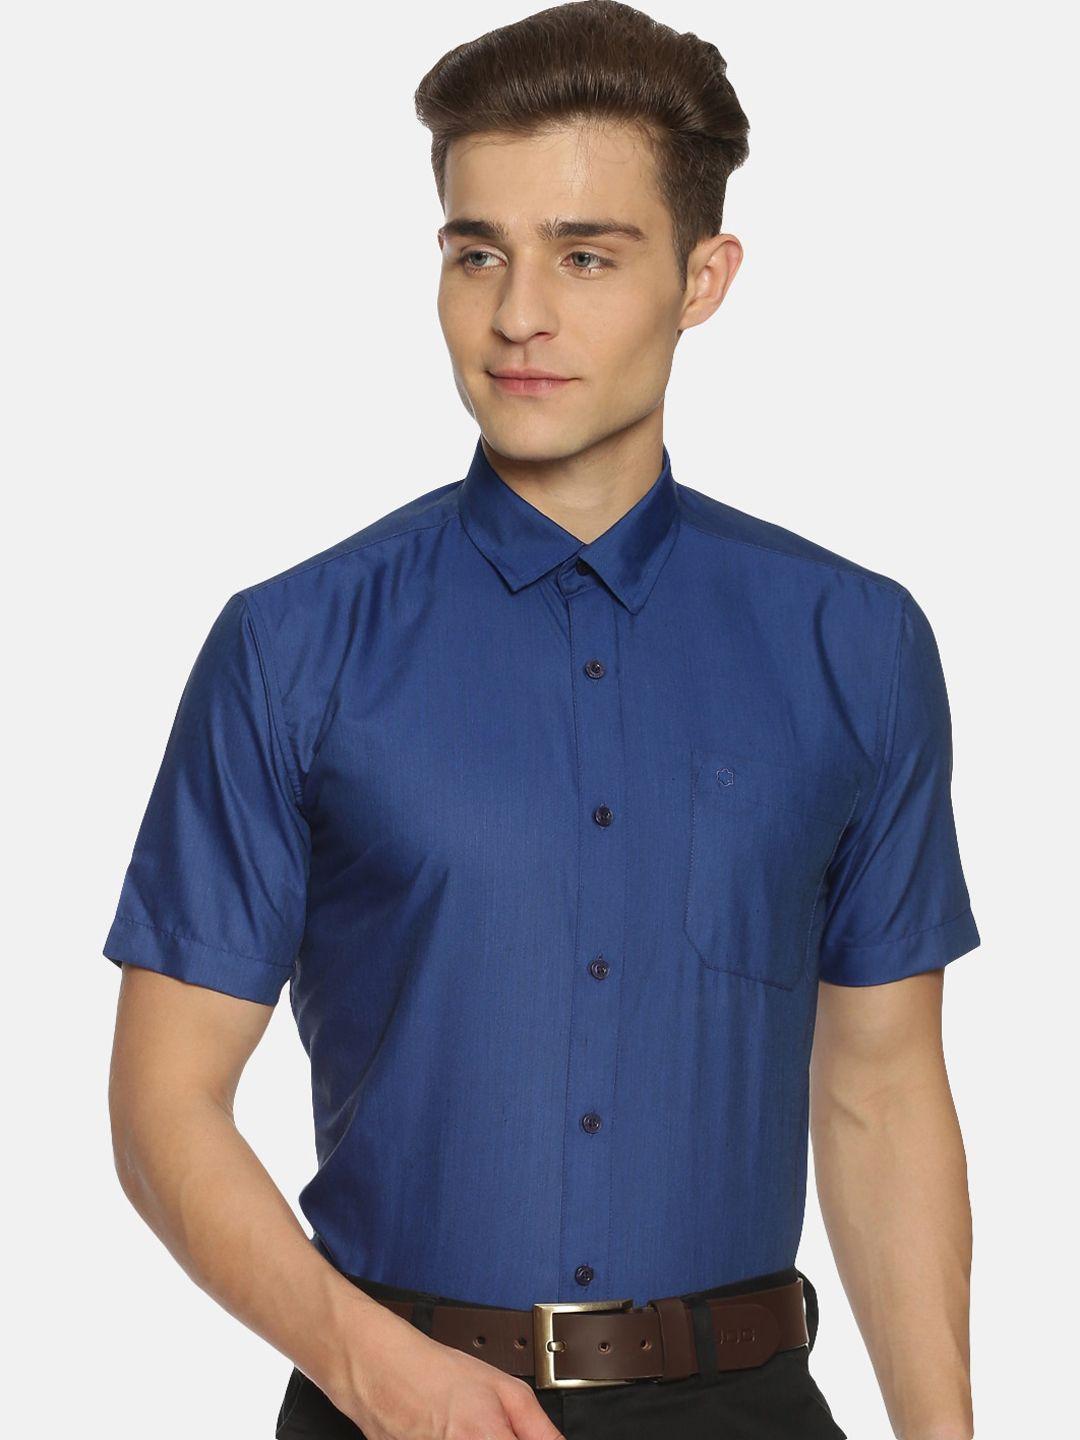 jansons men navy blue solid regular fit formal shirt